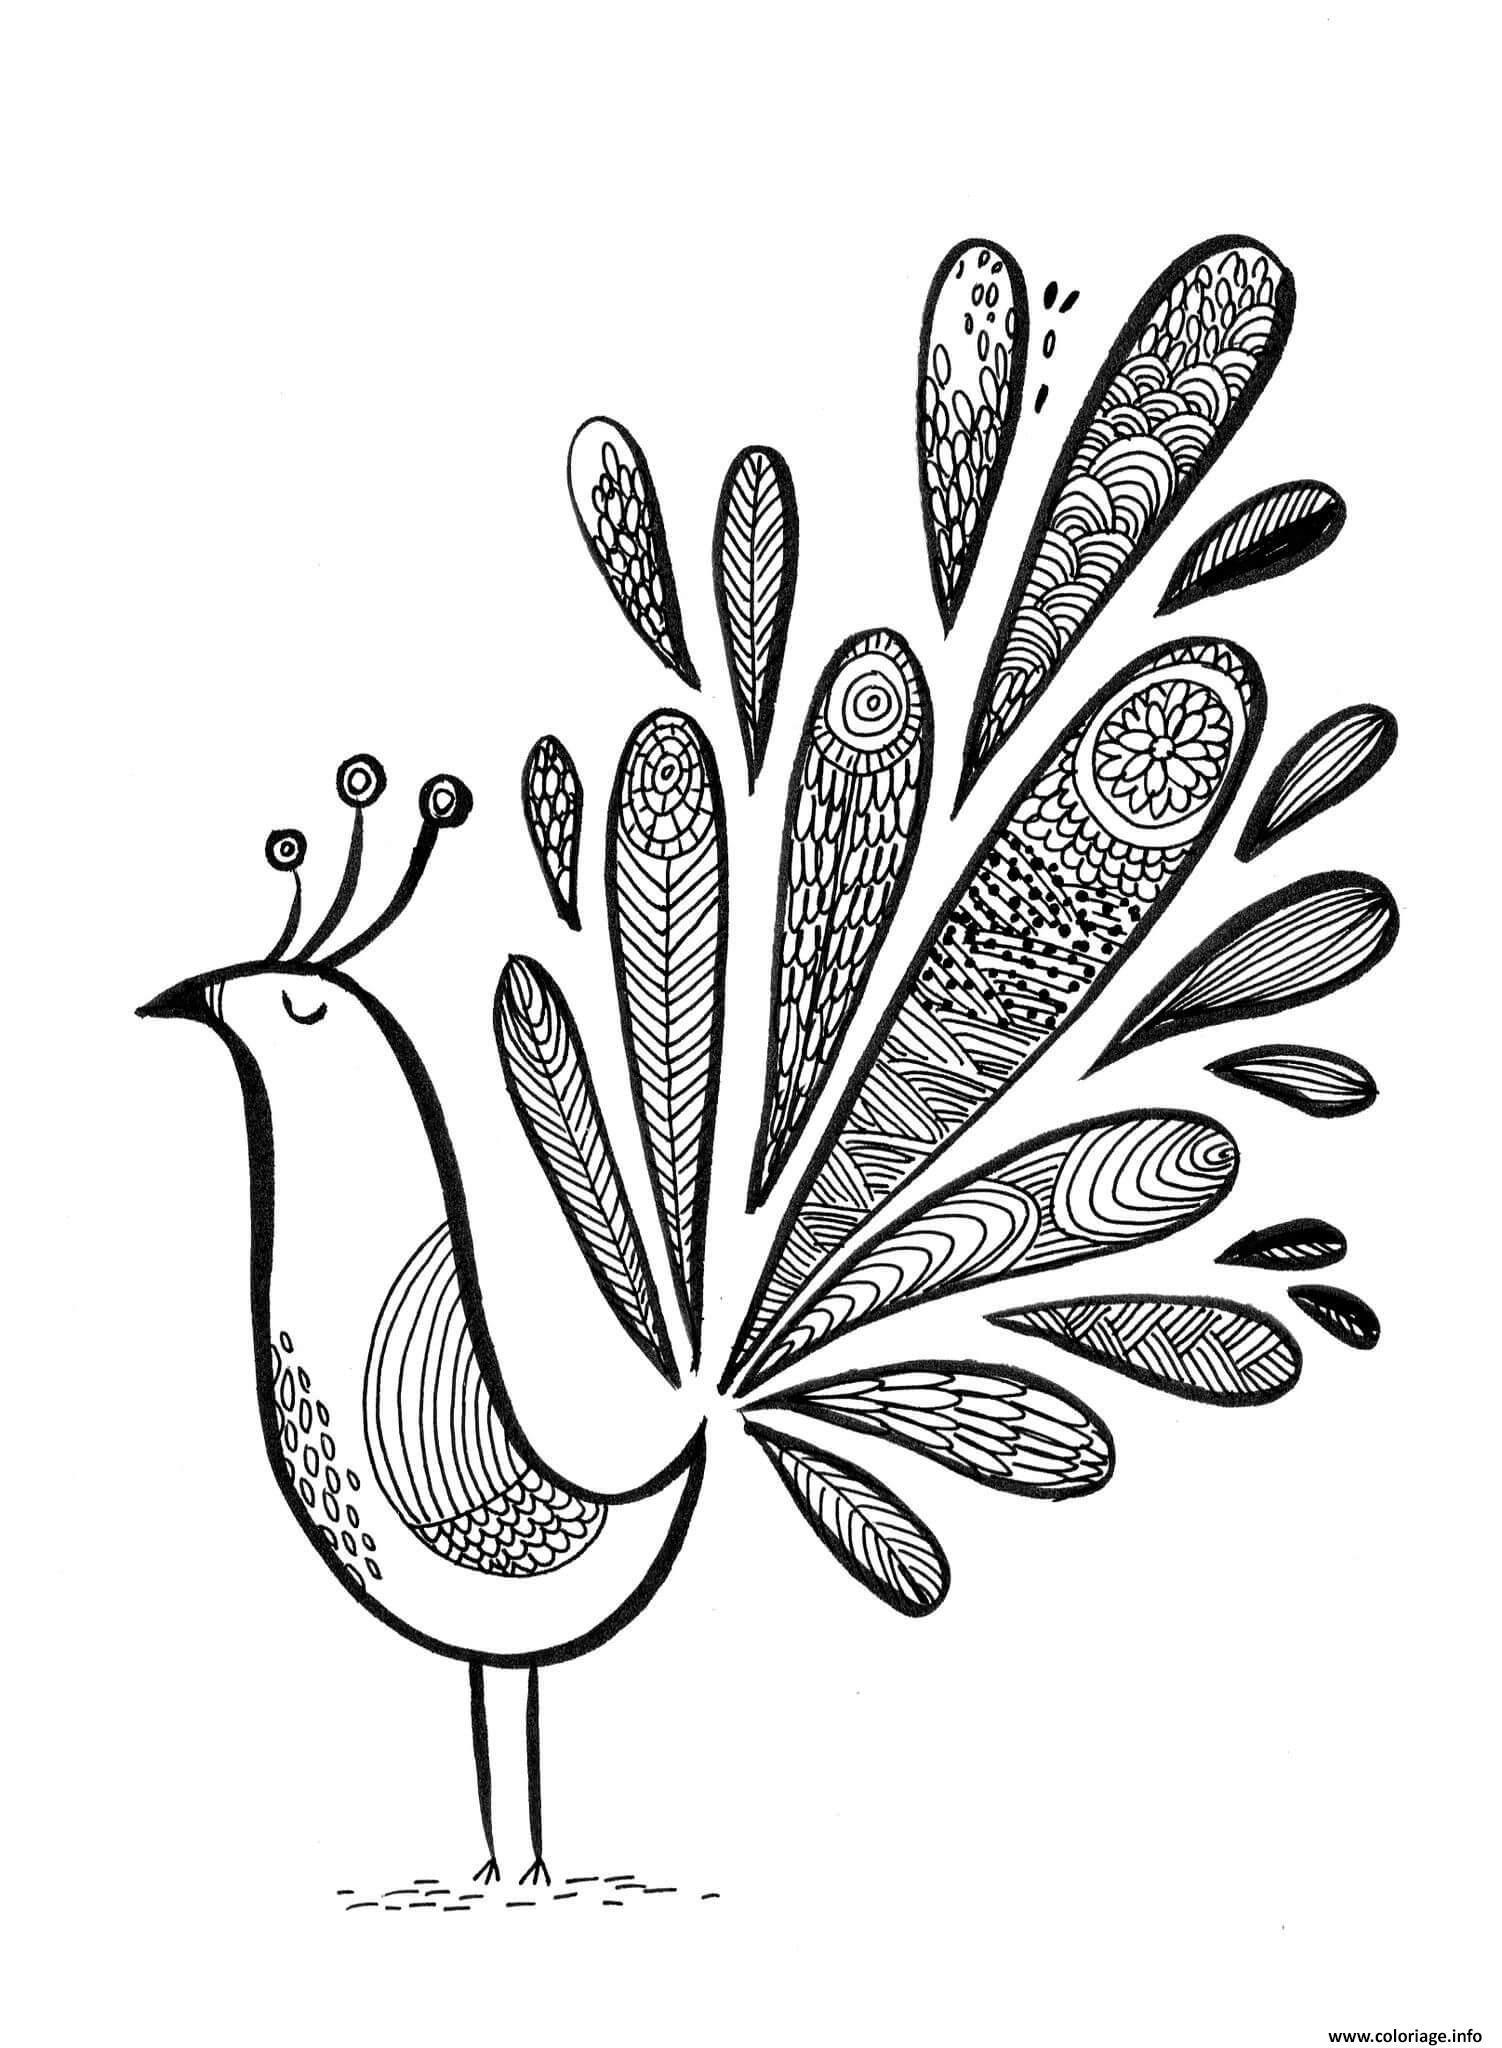 Dessin paon chic oiseau grand plumage Coloriage Gratuit à Imprimer